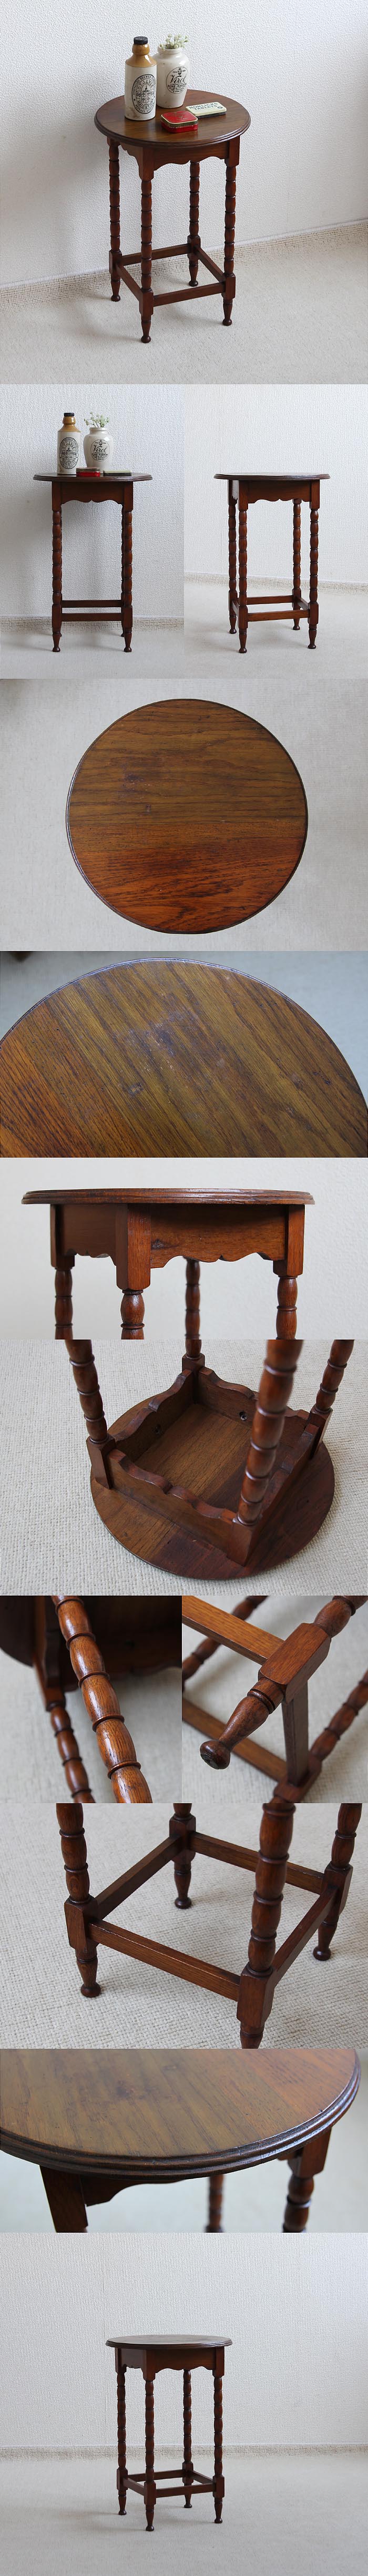 イギリス アンティーク サイドテーブル スモールサイズ 飾り台 オーク材 家具「ボビンレッグ」V-839